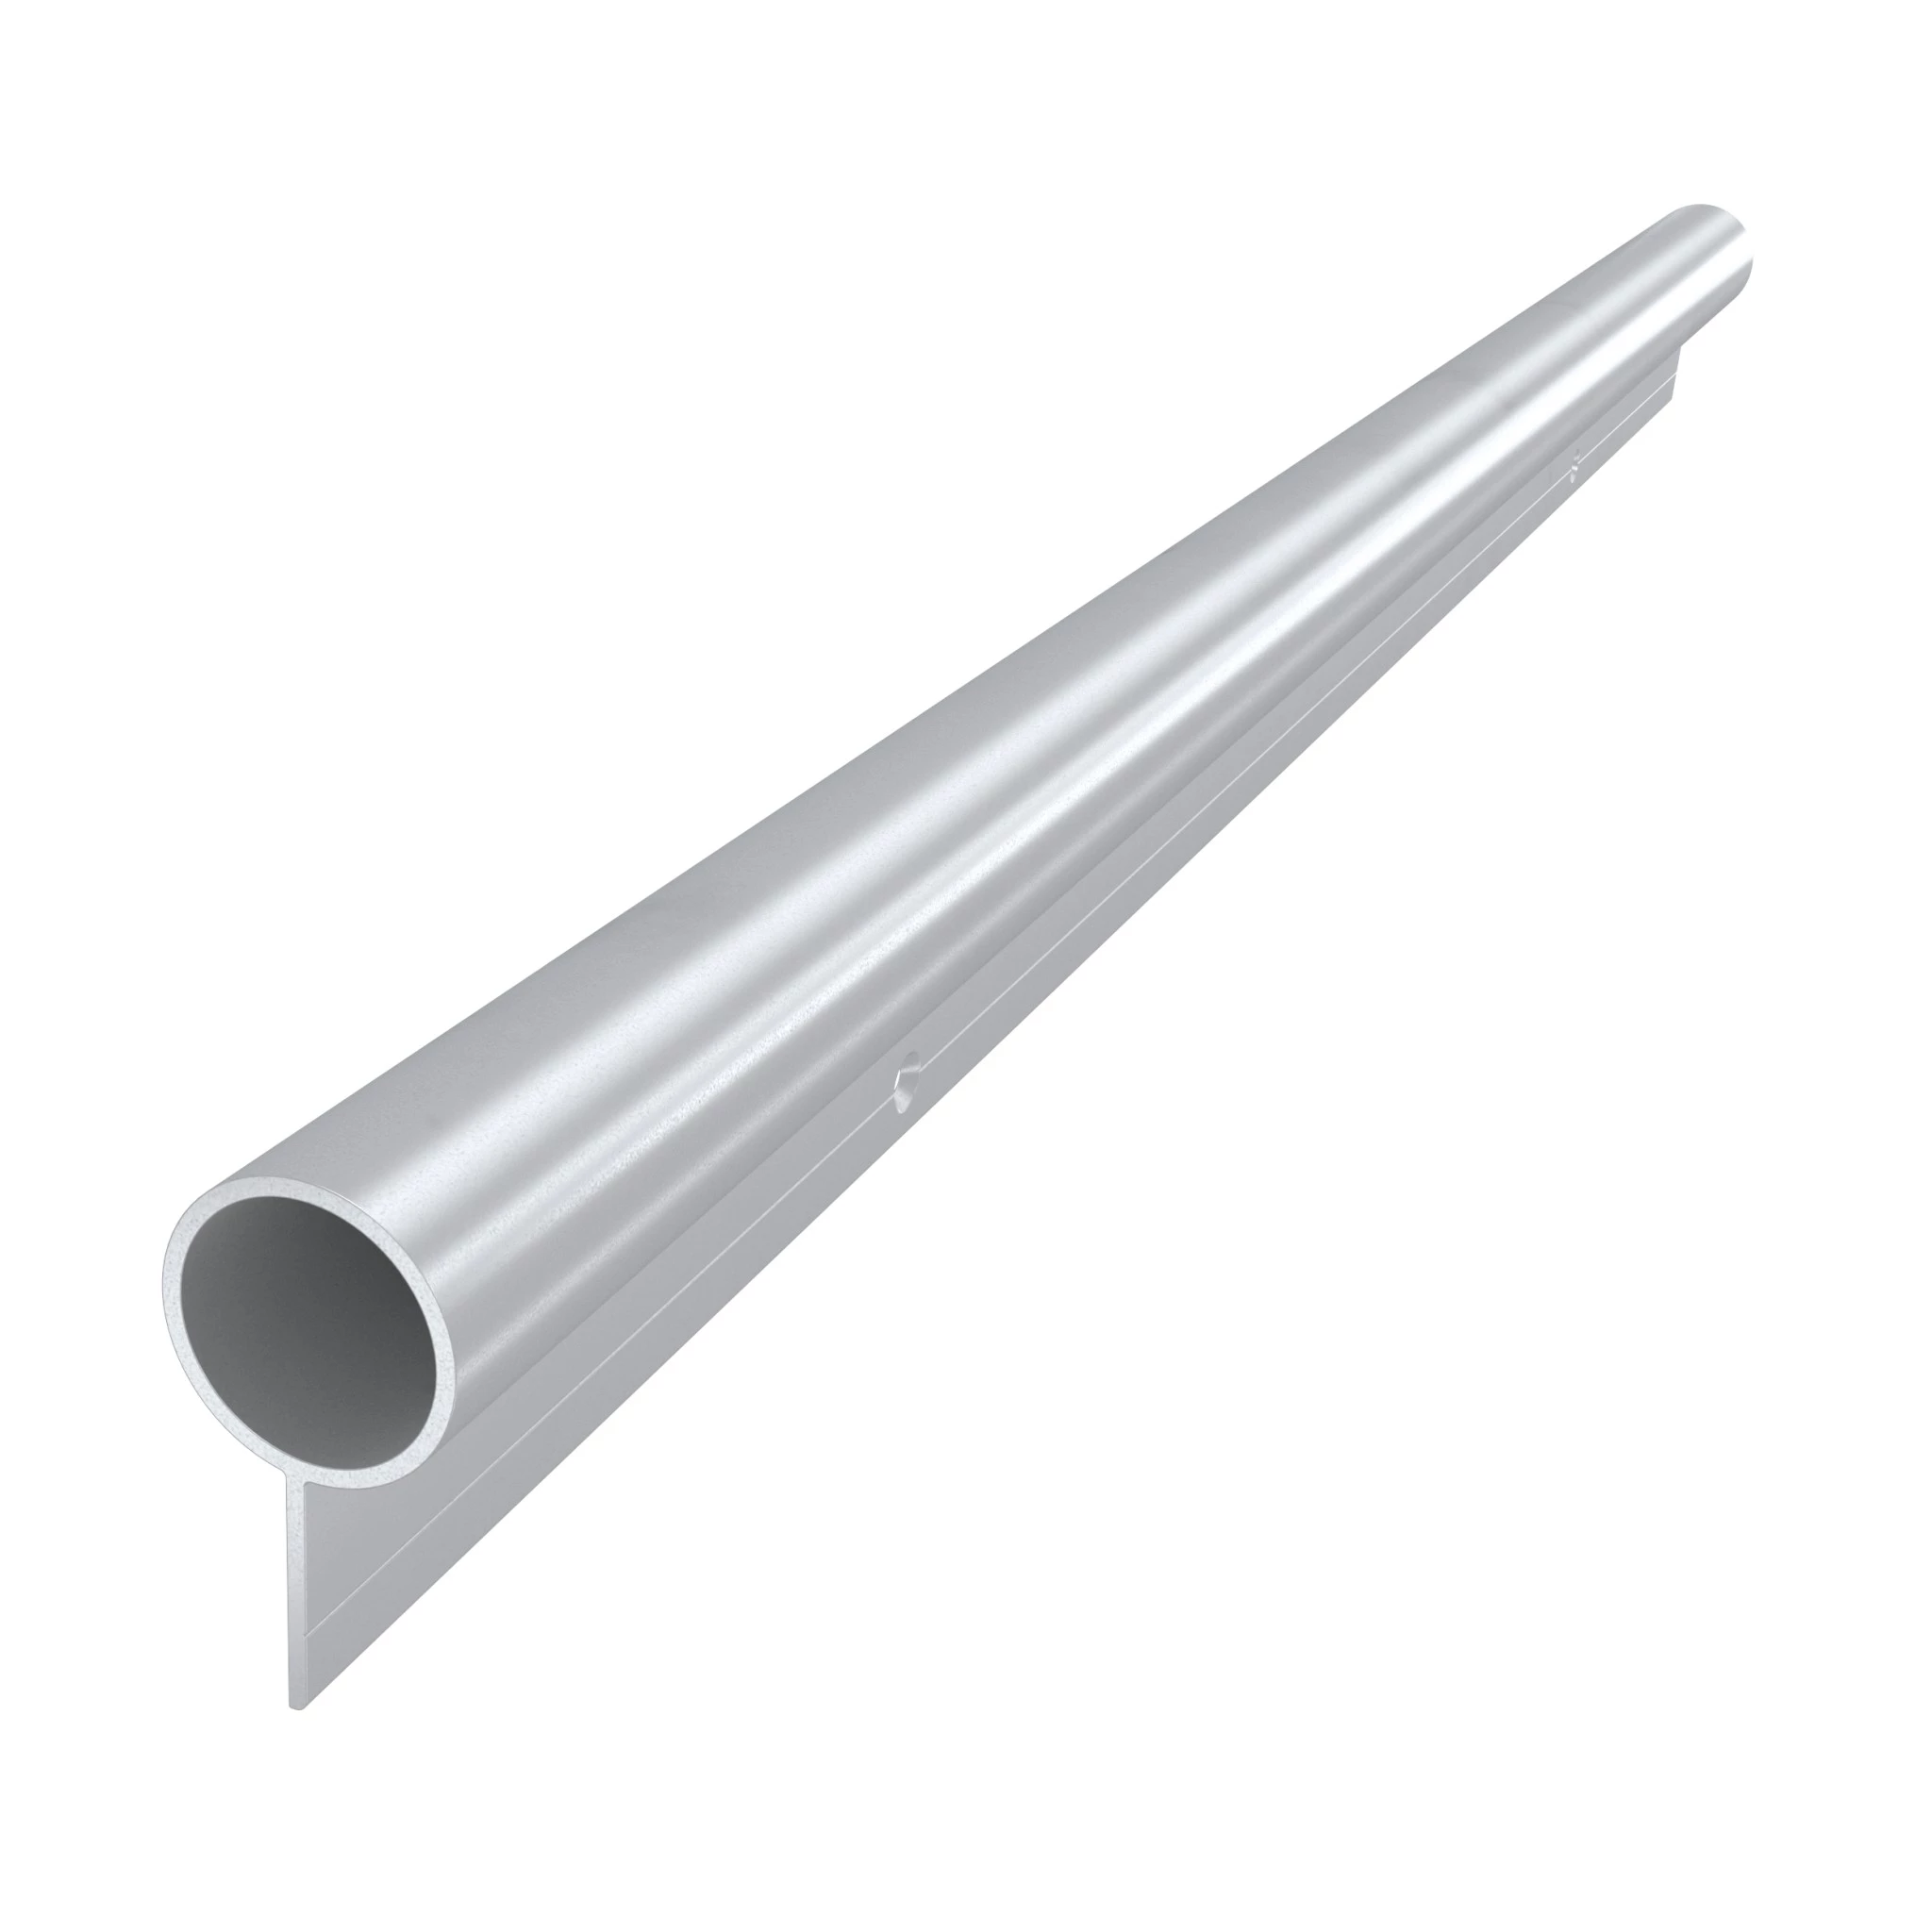 Bandseitensicherungen | Länge: 1750 mm | Farbe: Silber